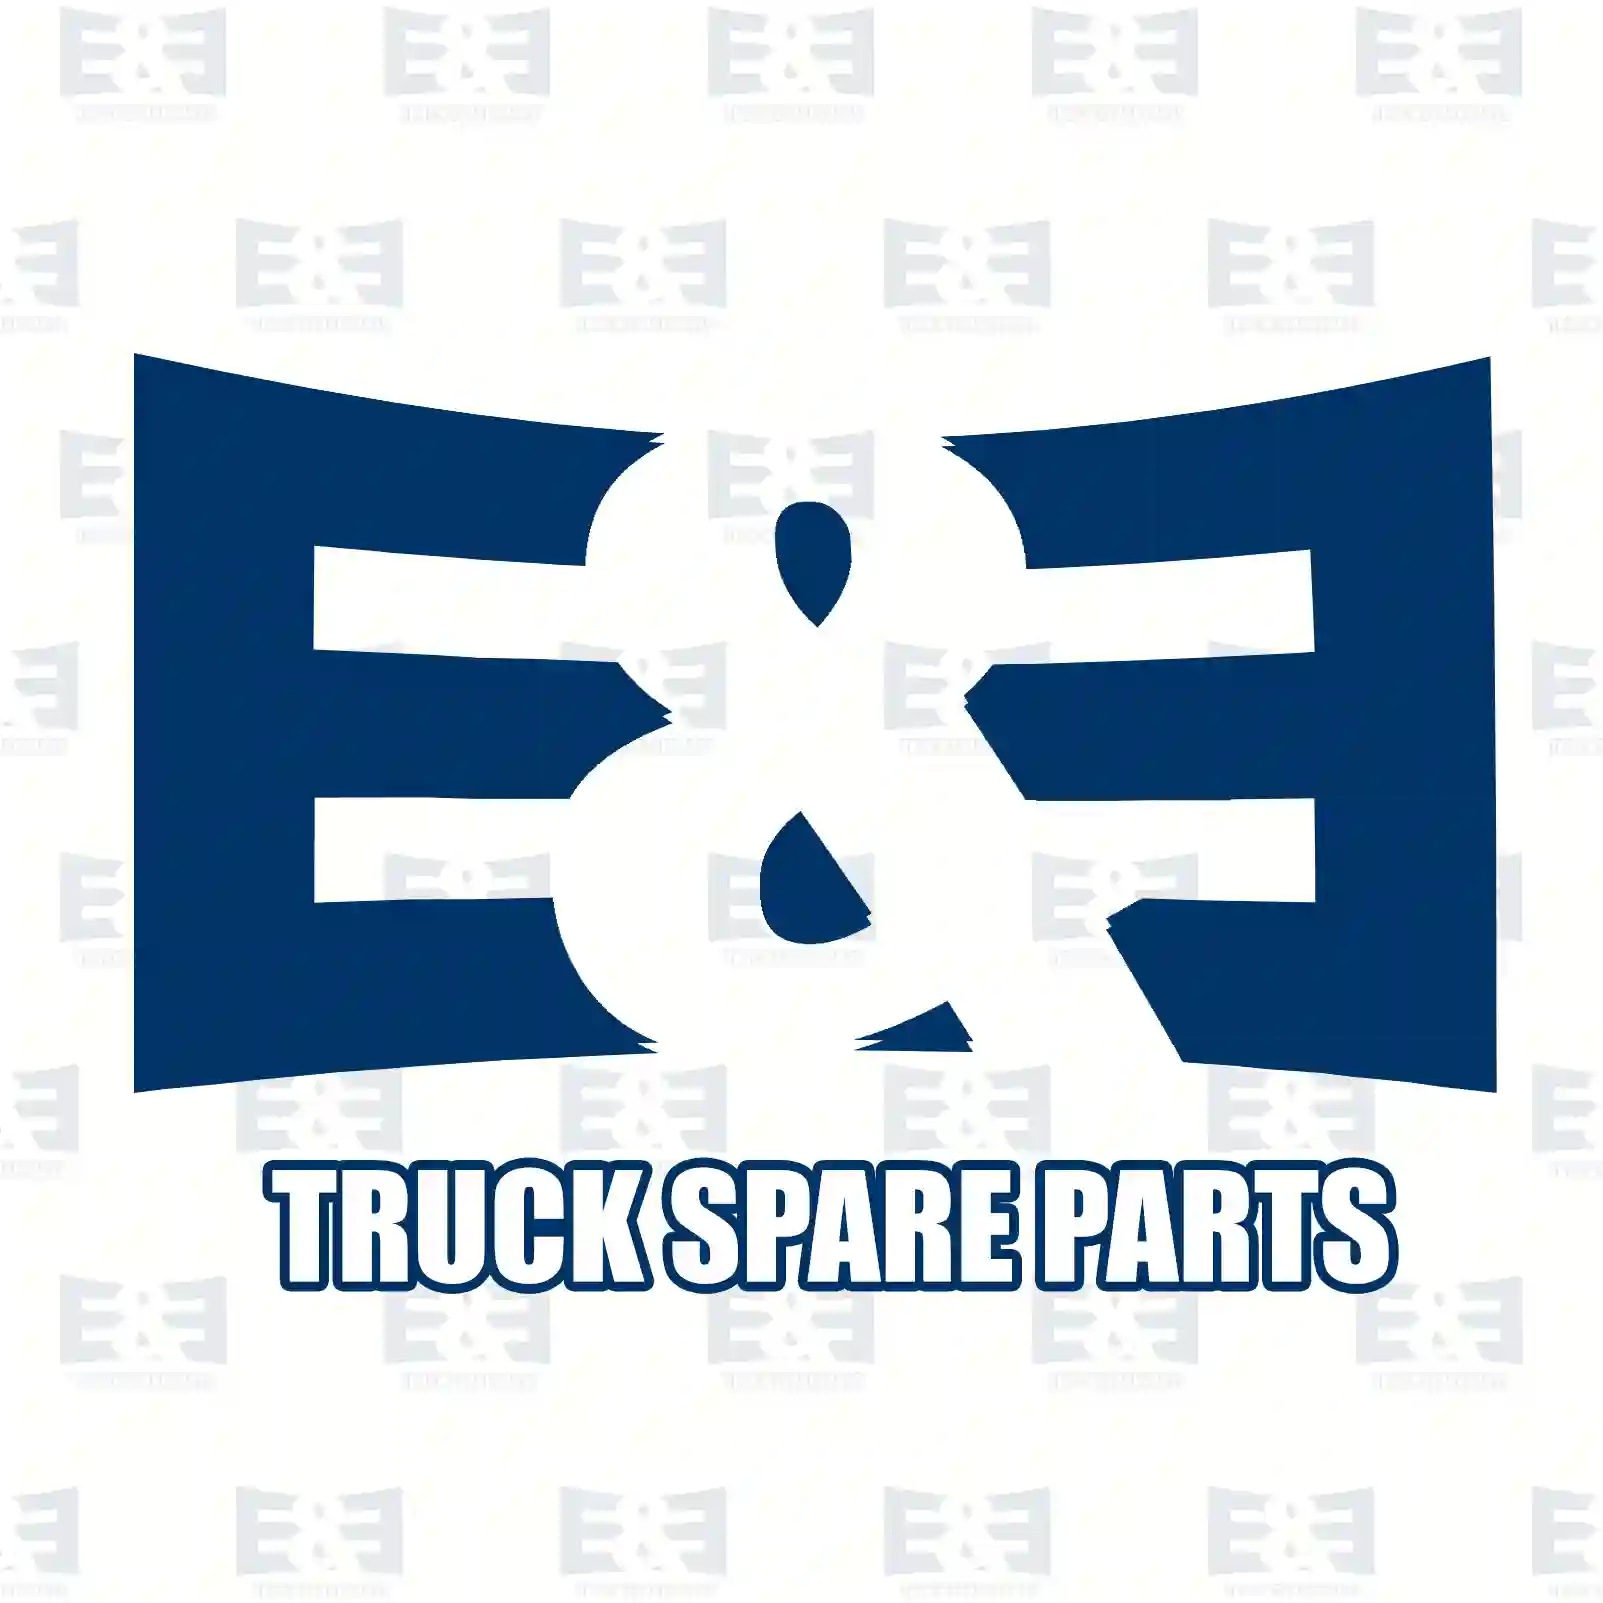 Thermostat, with gasket, 2E2203688, 5010295225, 5010295225, ZG00686-0008 ||  2E2203688 E&E Truck Spare Parts | Truck Spare Parts, Auotomotive Spare Parts Thermostat, with gasket, 2E2203688, 5010295225, 5010295225, ZG00686-0008 ||  2E2203688 E&E Truck Spare Parts | Truck Spare Parts, Auotomotive Spare Parts